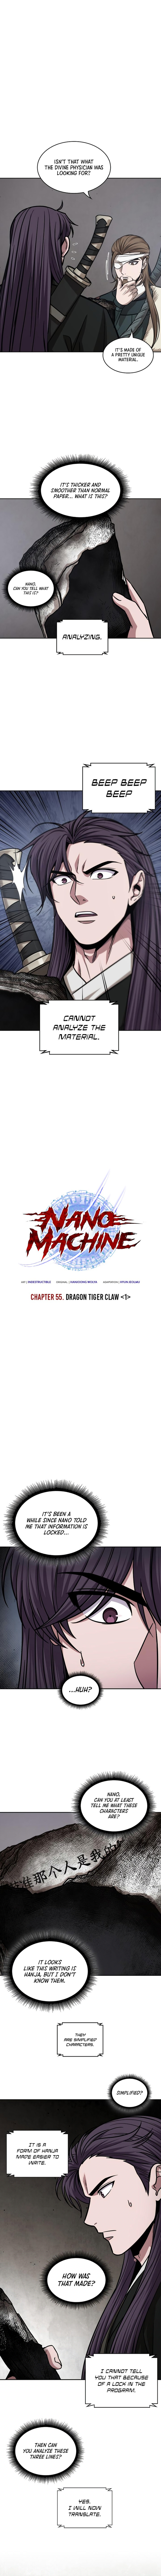 Nano Machine 156 1